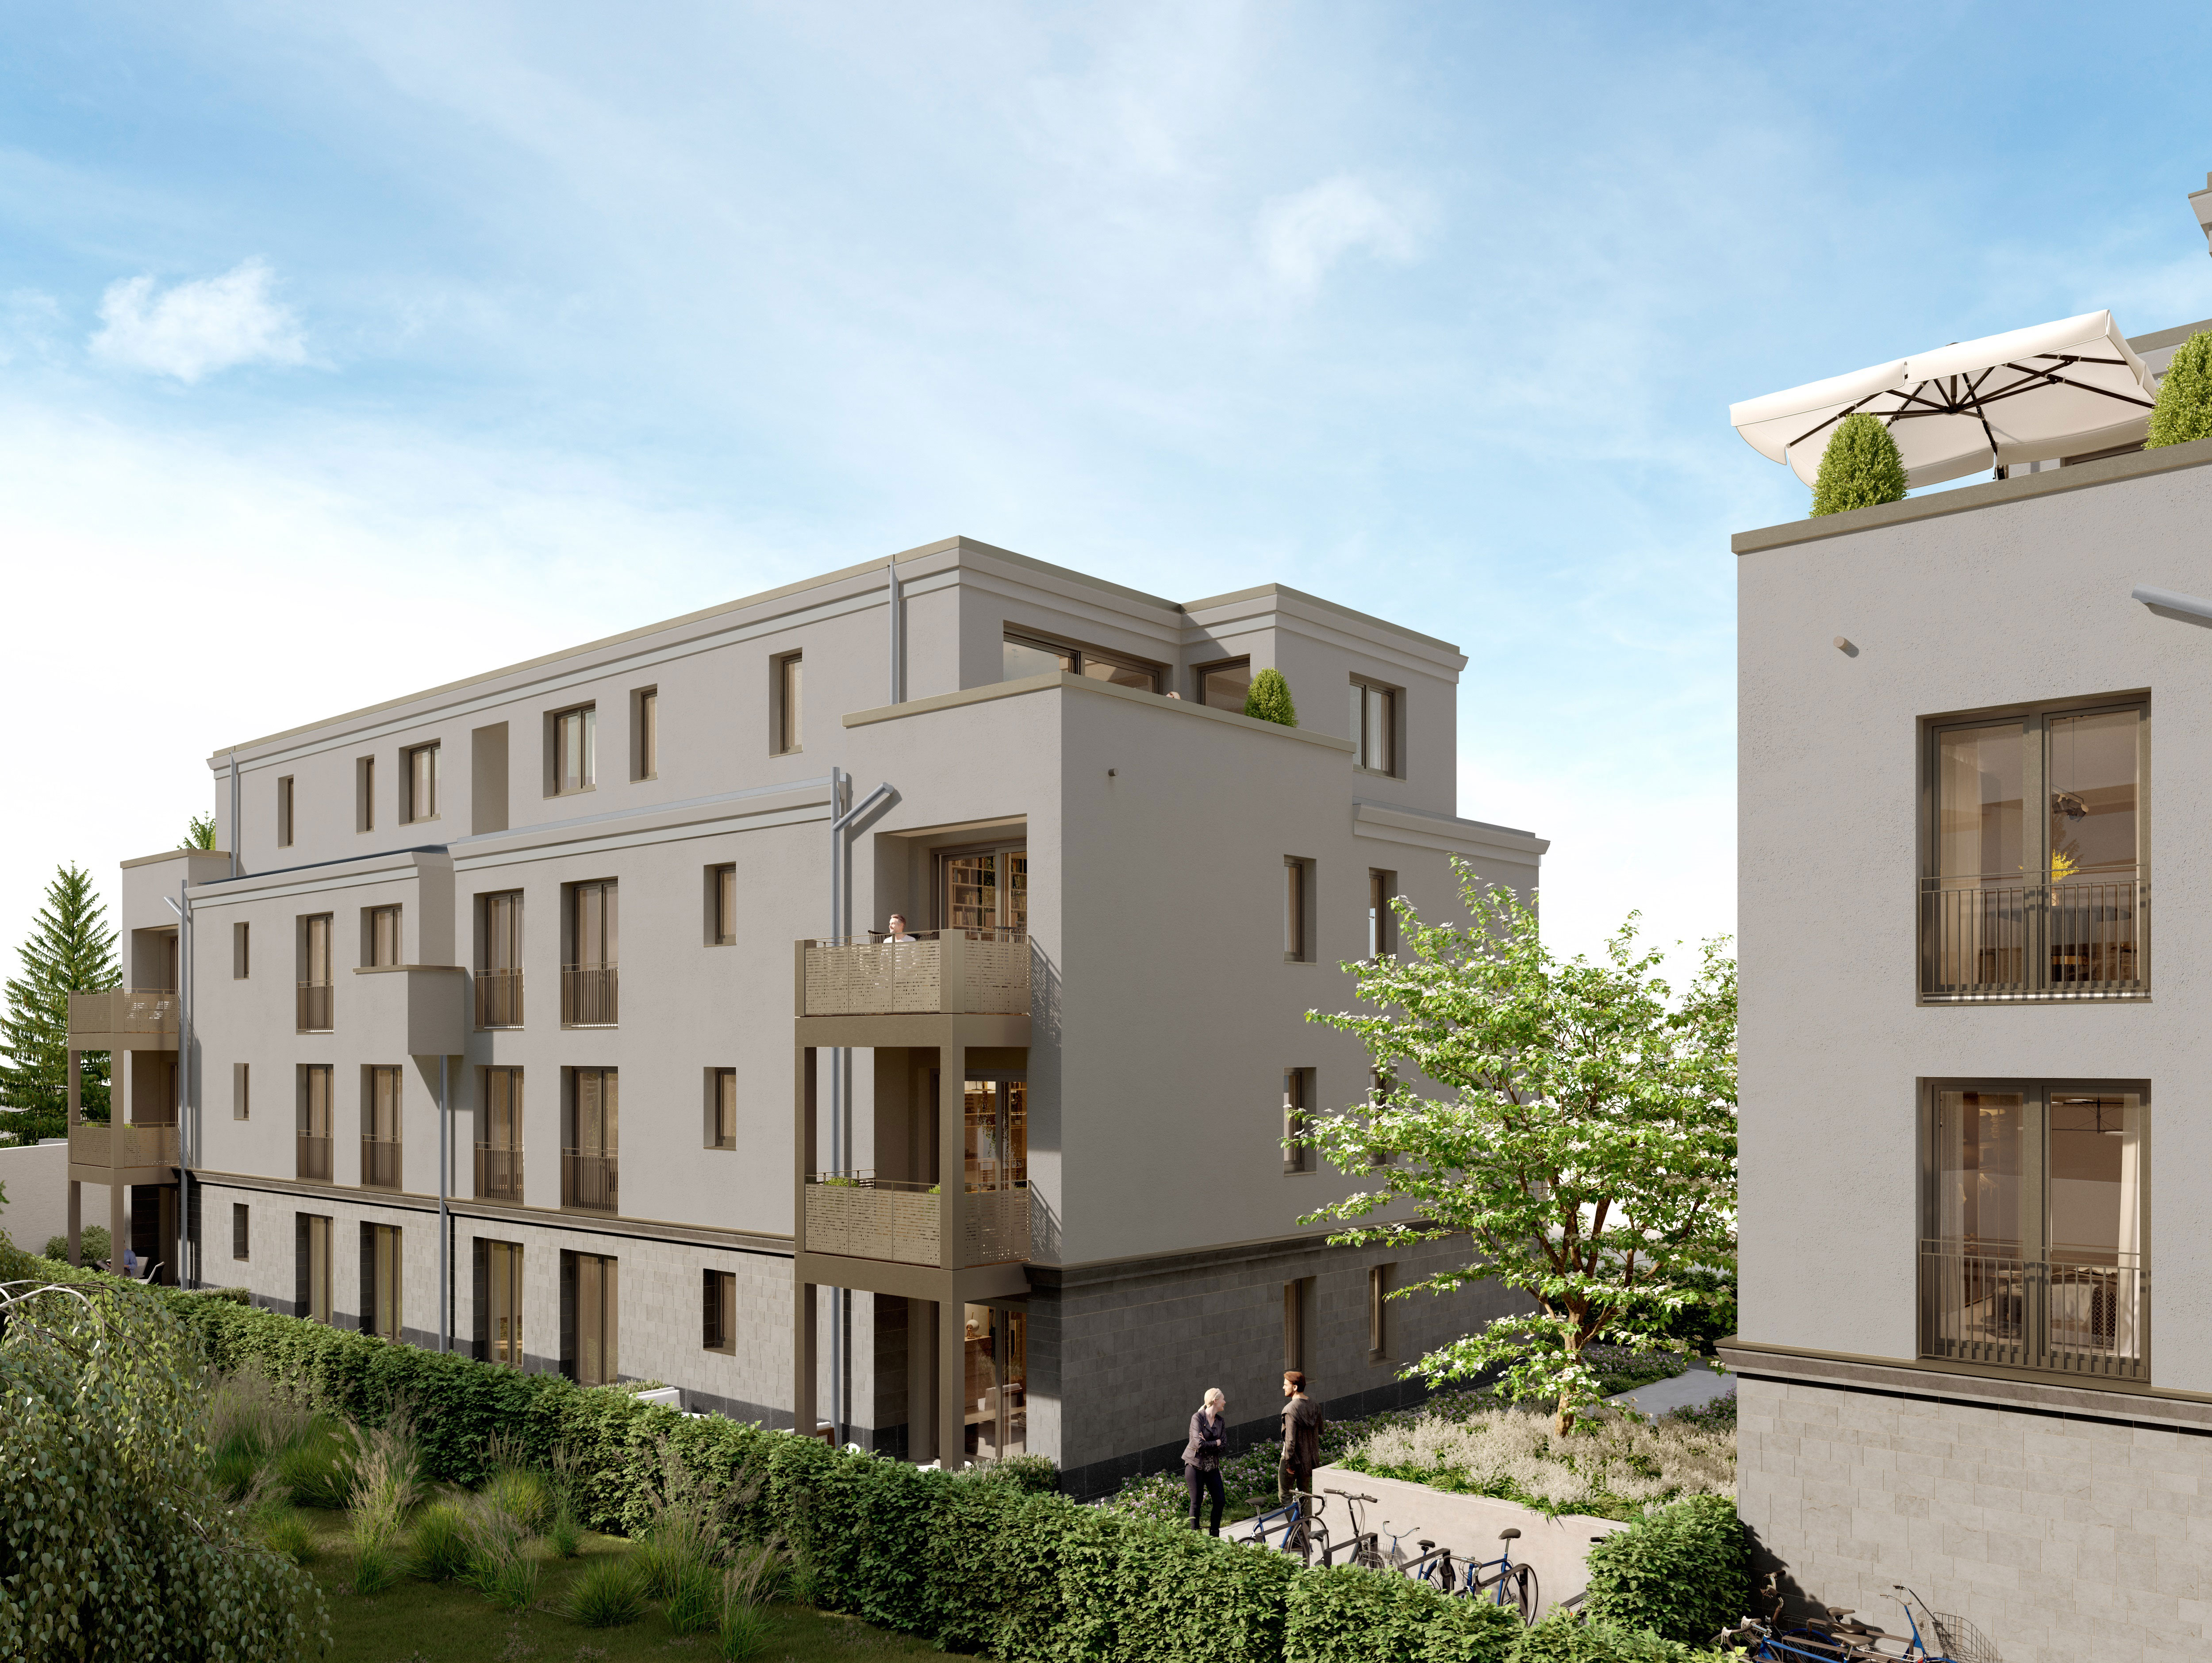 Wohnungen mit Garten in Köln-Südstadt zum Kauf in Top-Lage am Bonner Wall
				